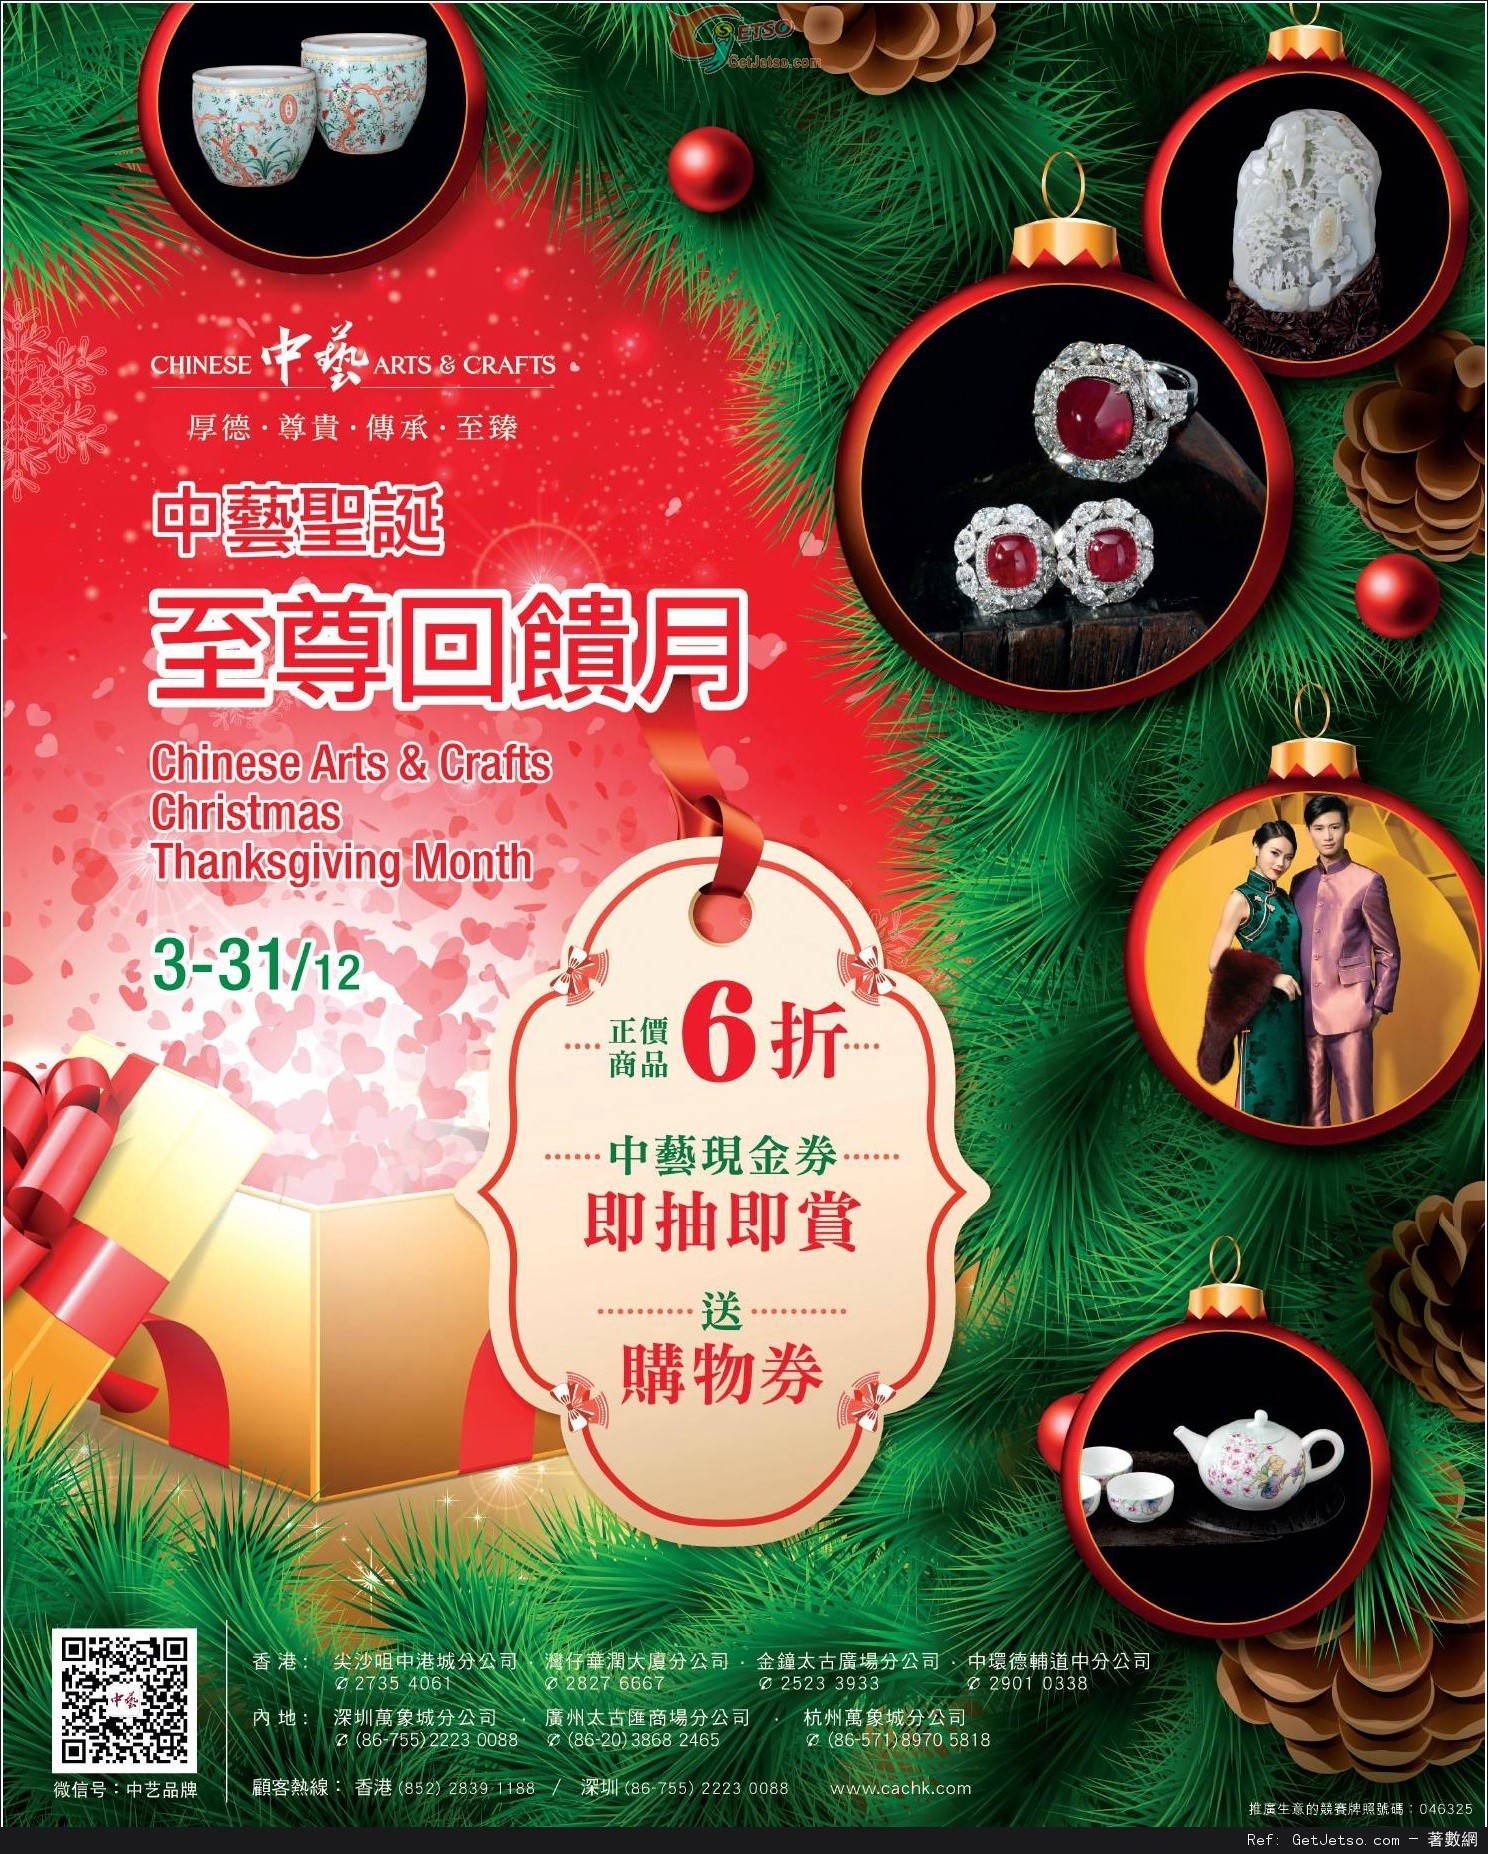 中藝聖誕至尊回饋月正價商品6折優惠(至15年12月31日)圖片1